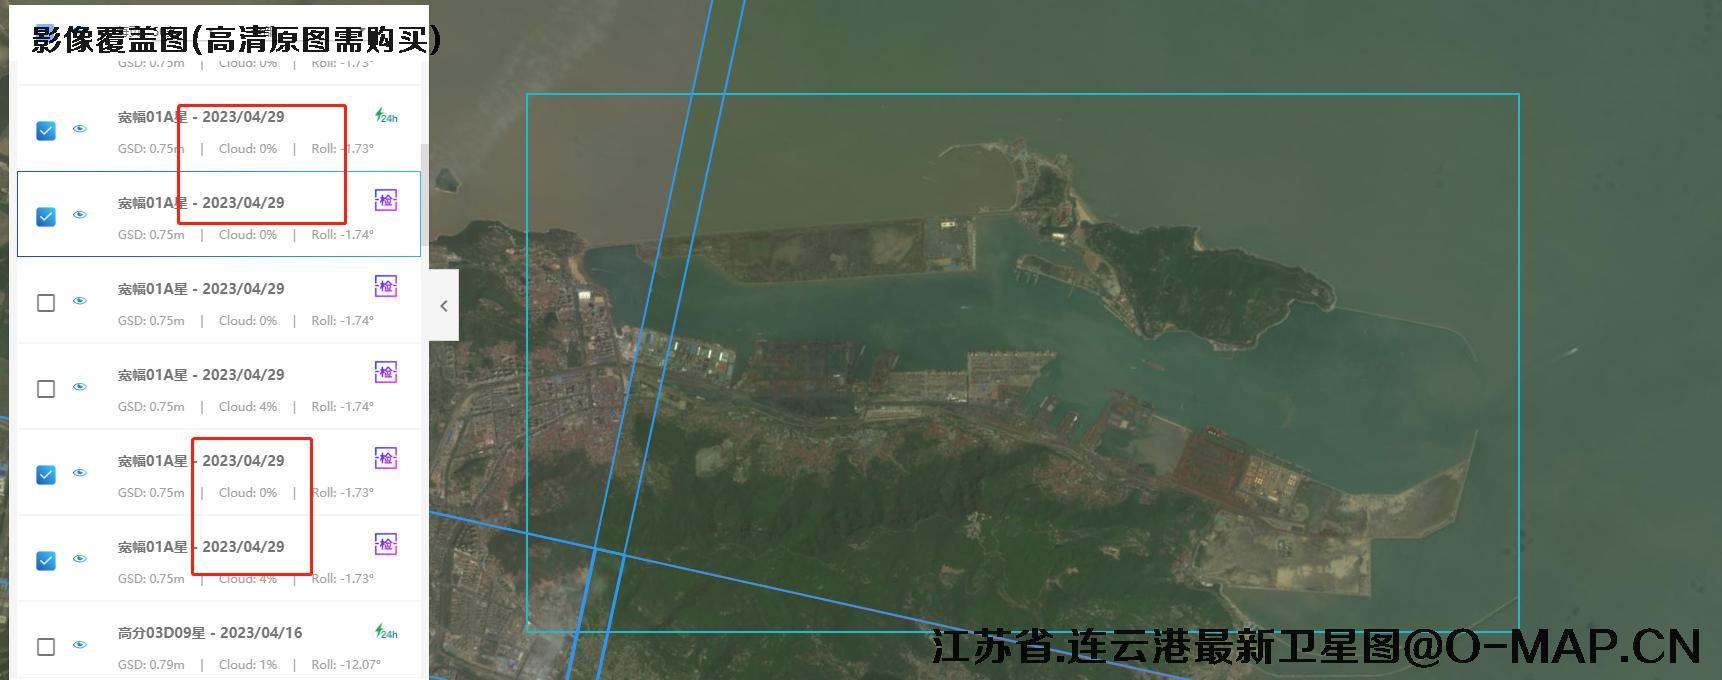 江苏省连云港地区2023年最新卫星图查询结果